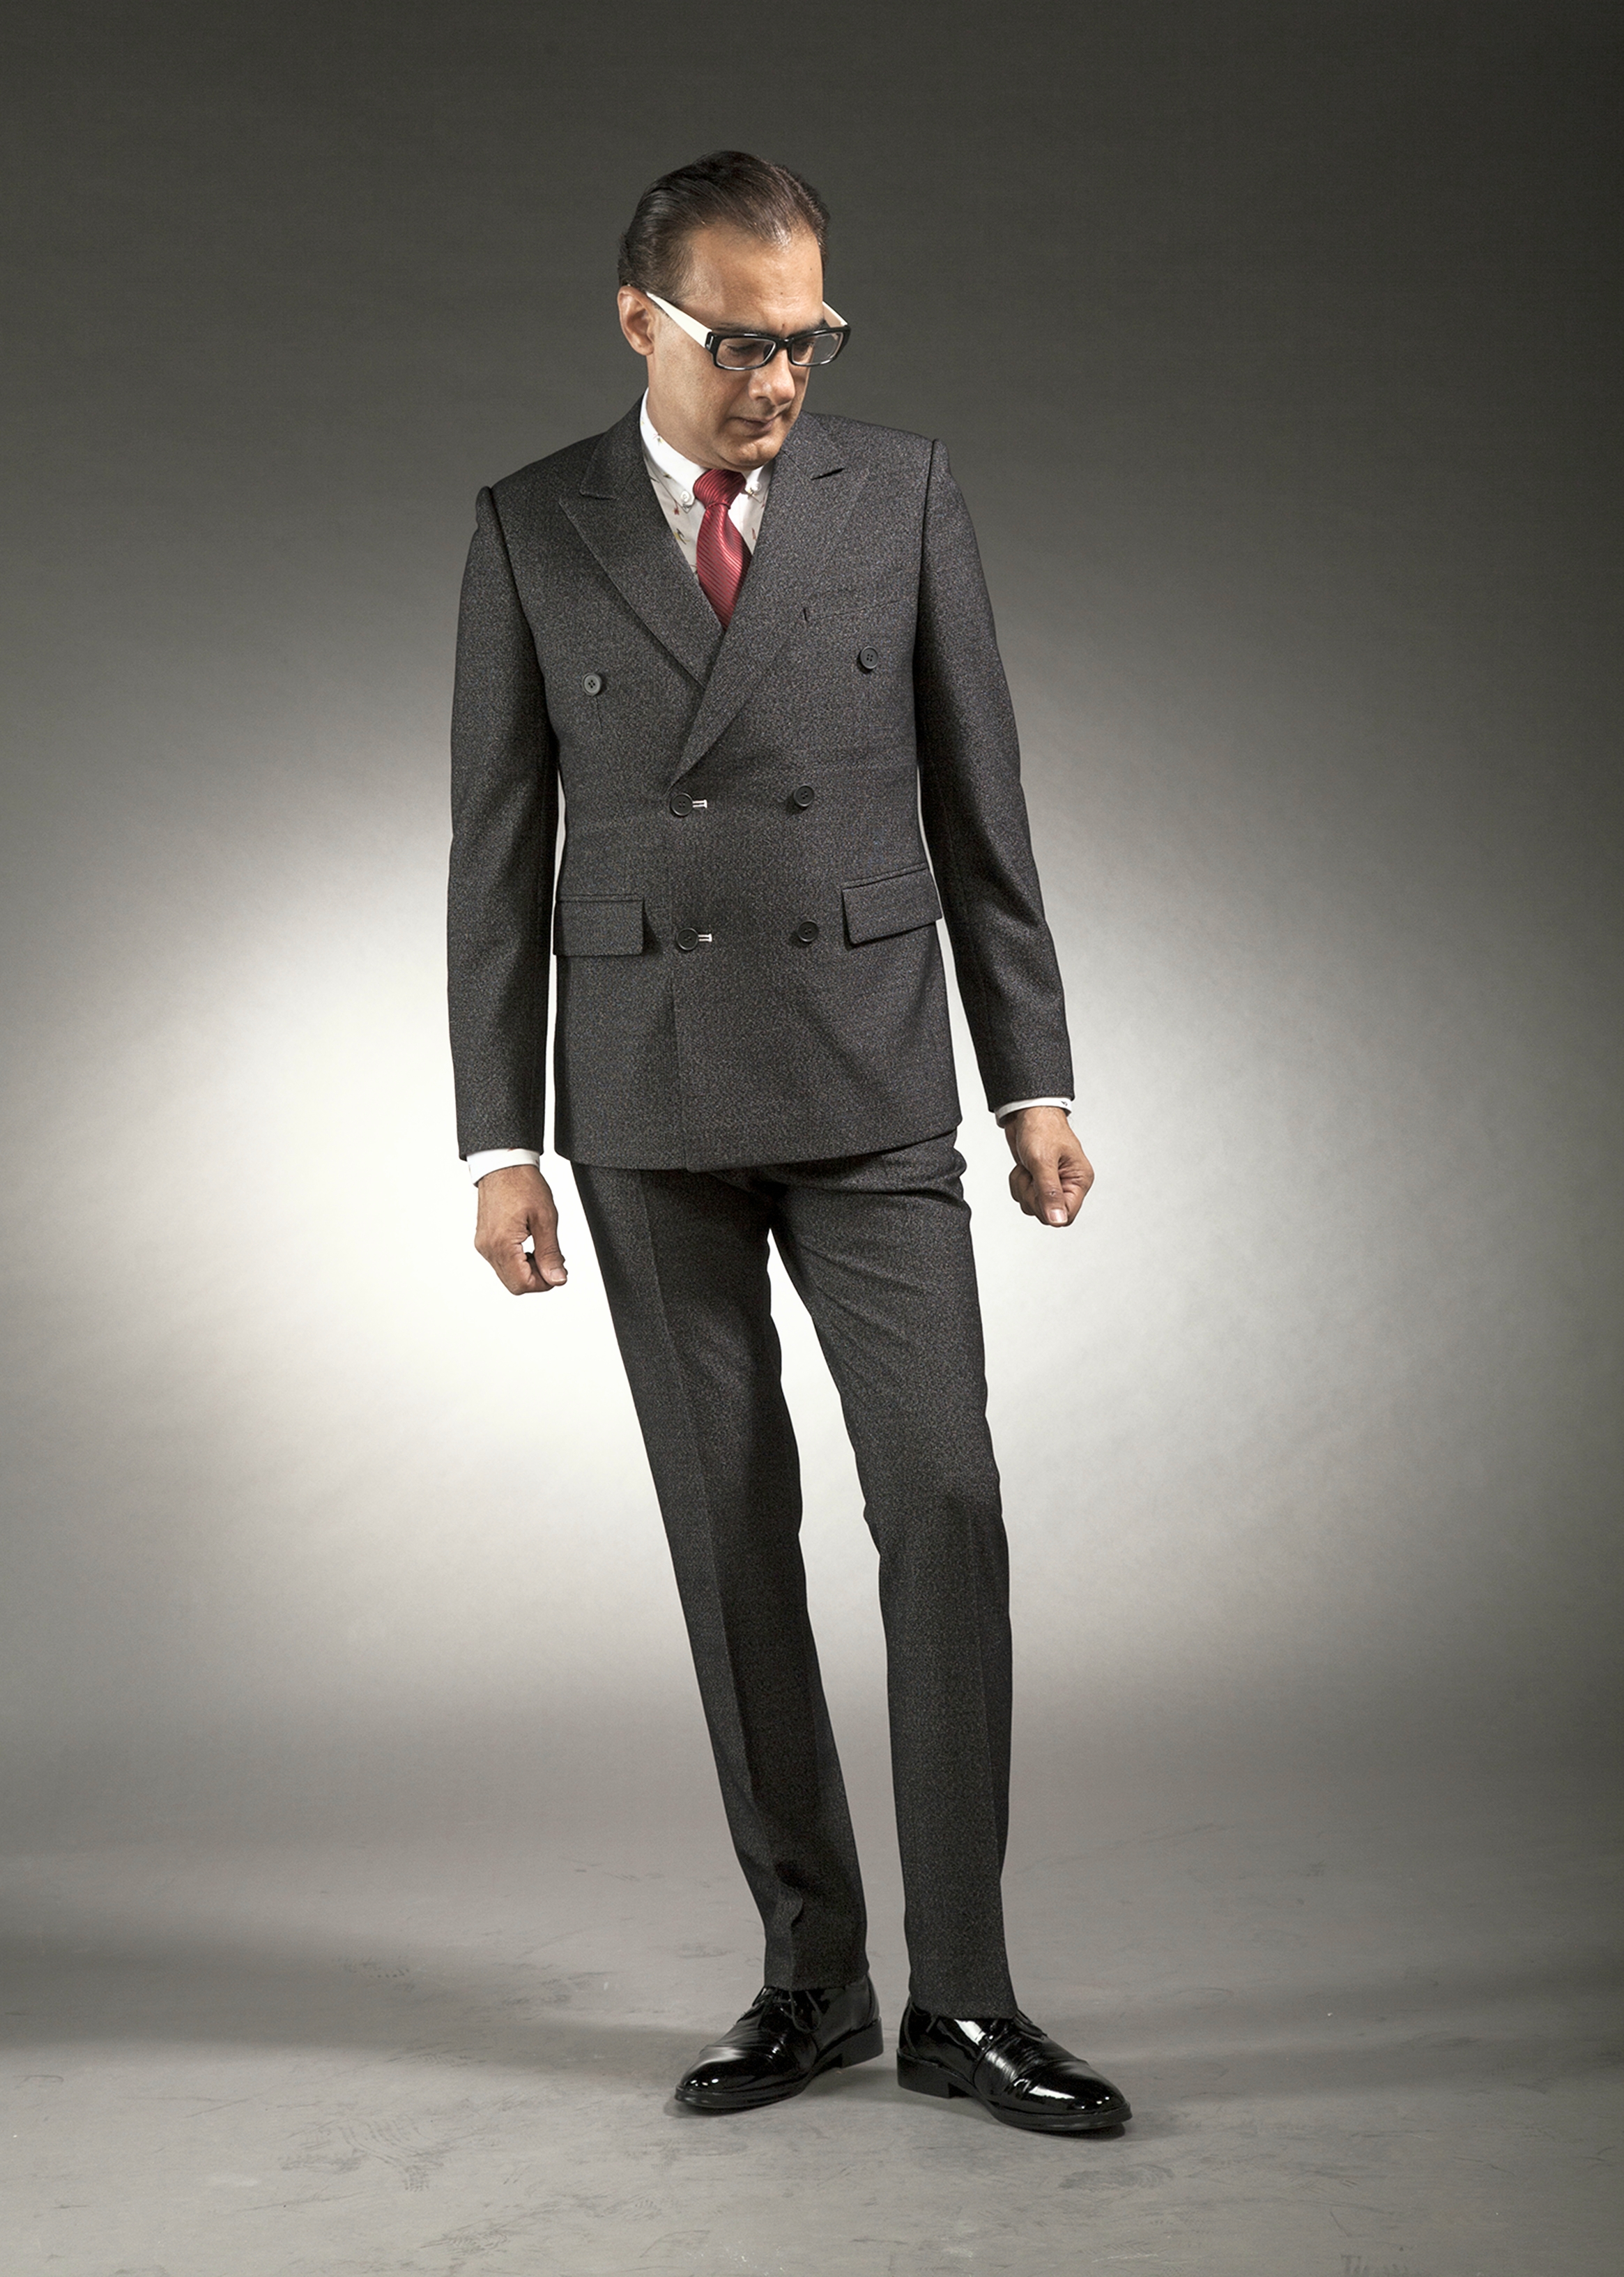 0491A-tailor_tailors_bespoke_tailoring_tuxedo_tux_wedding_black_tie_suit_suits_singapore_business